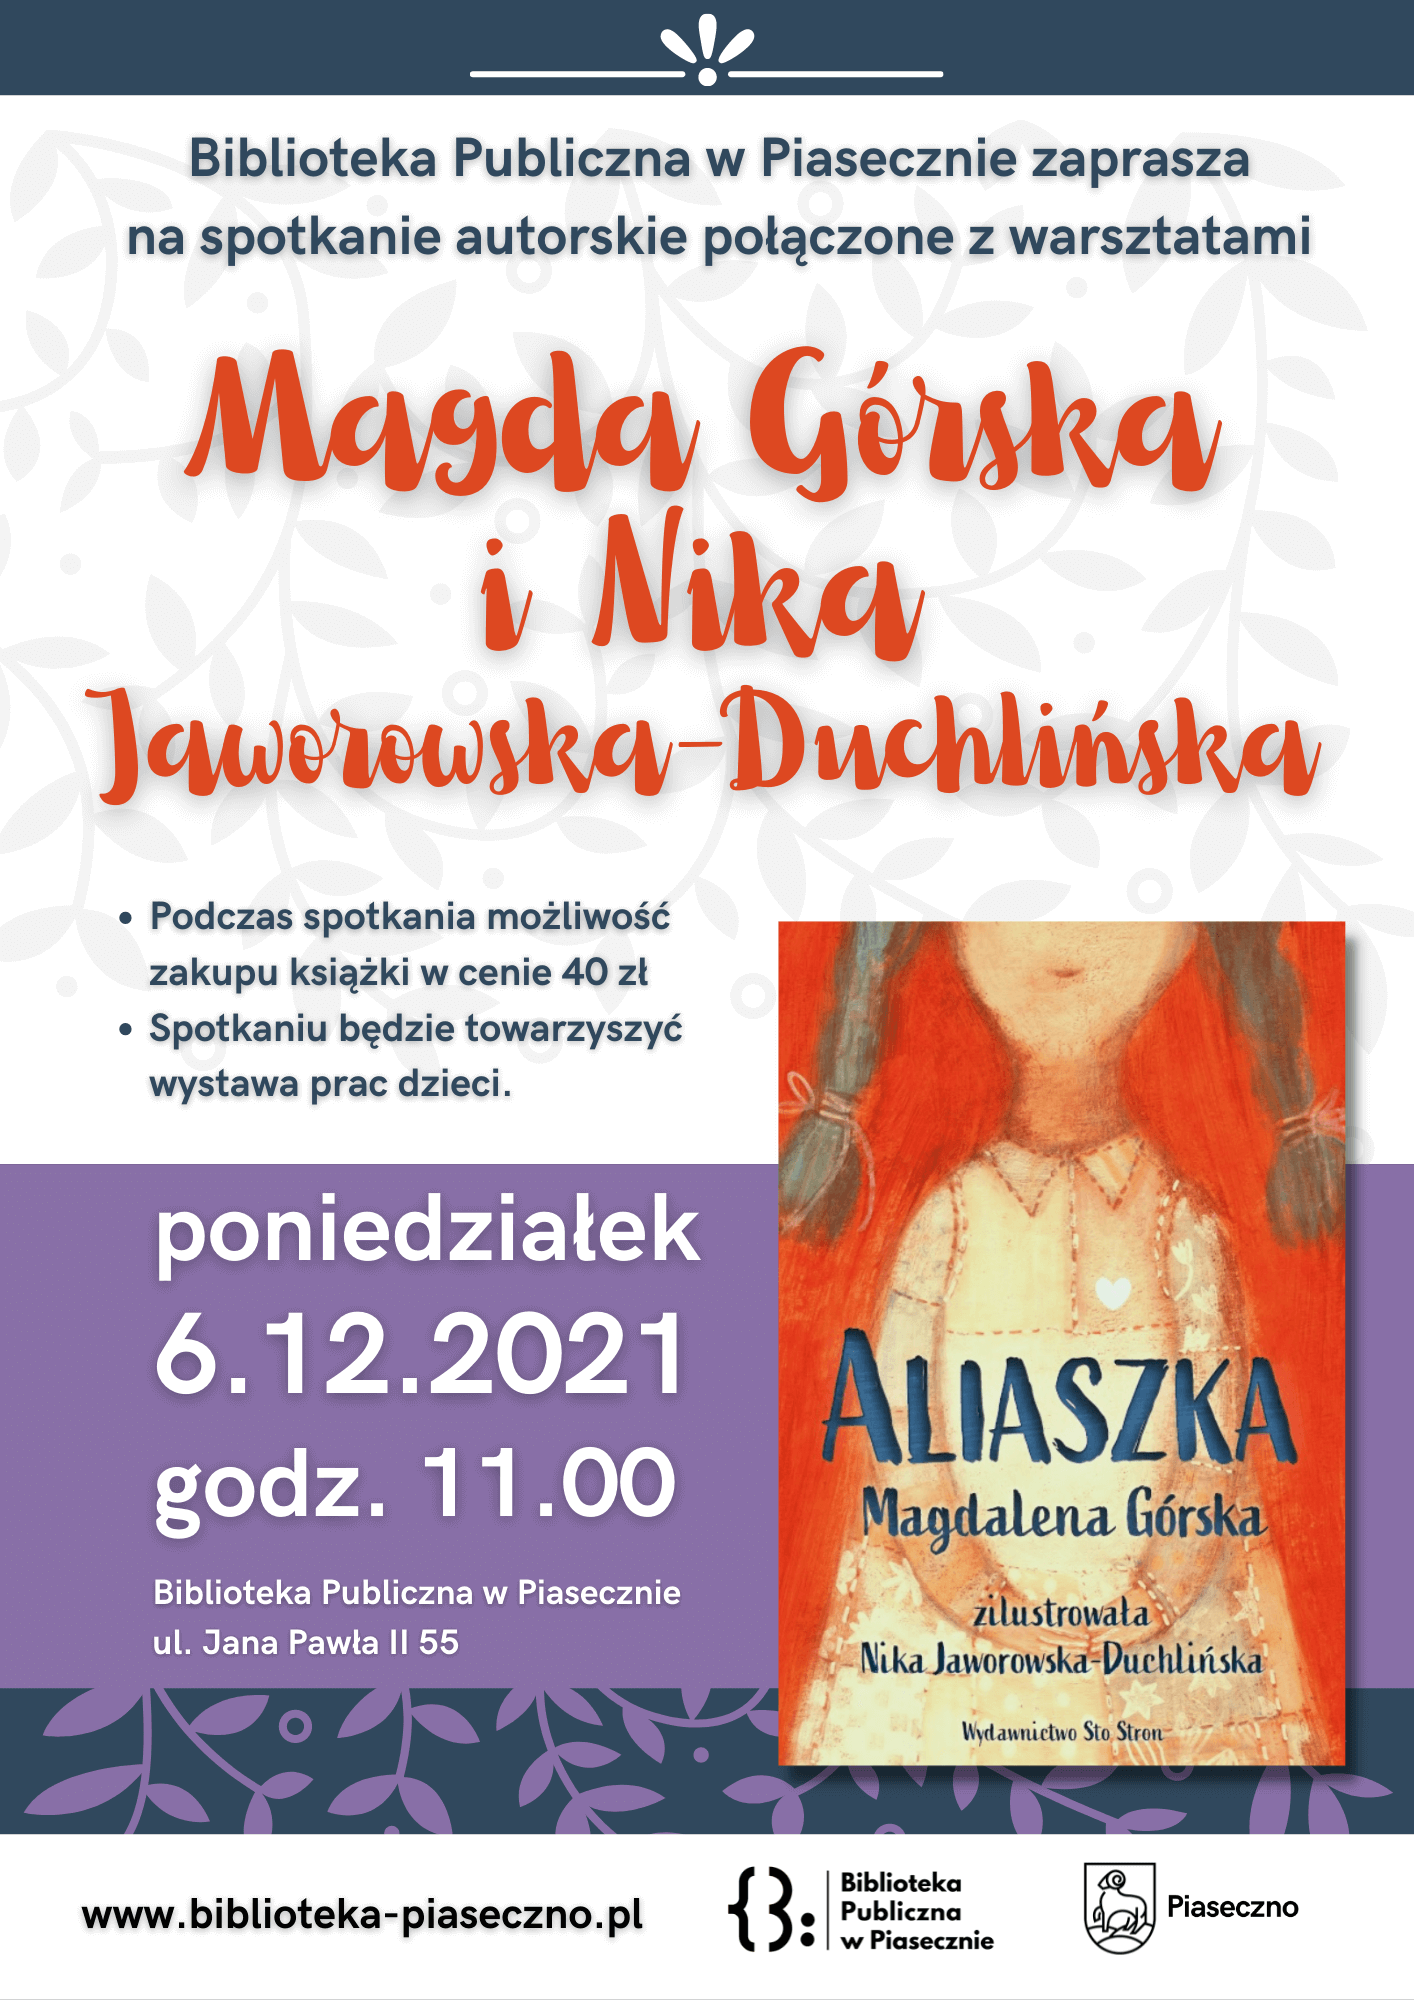 Aliaszka – spotkanie autorskie z Magdaleną Górską i Niką Duchlińską-Jaworowską